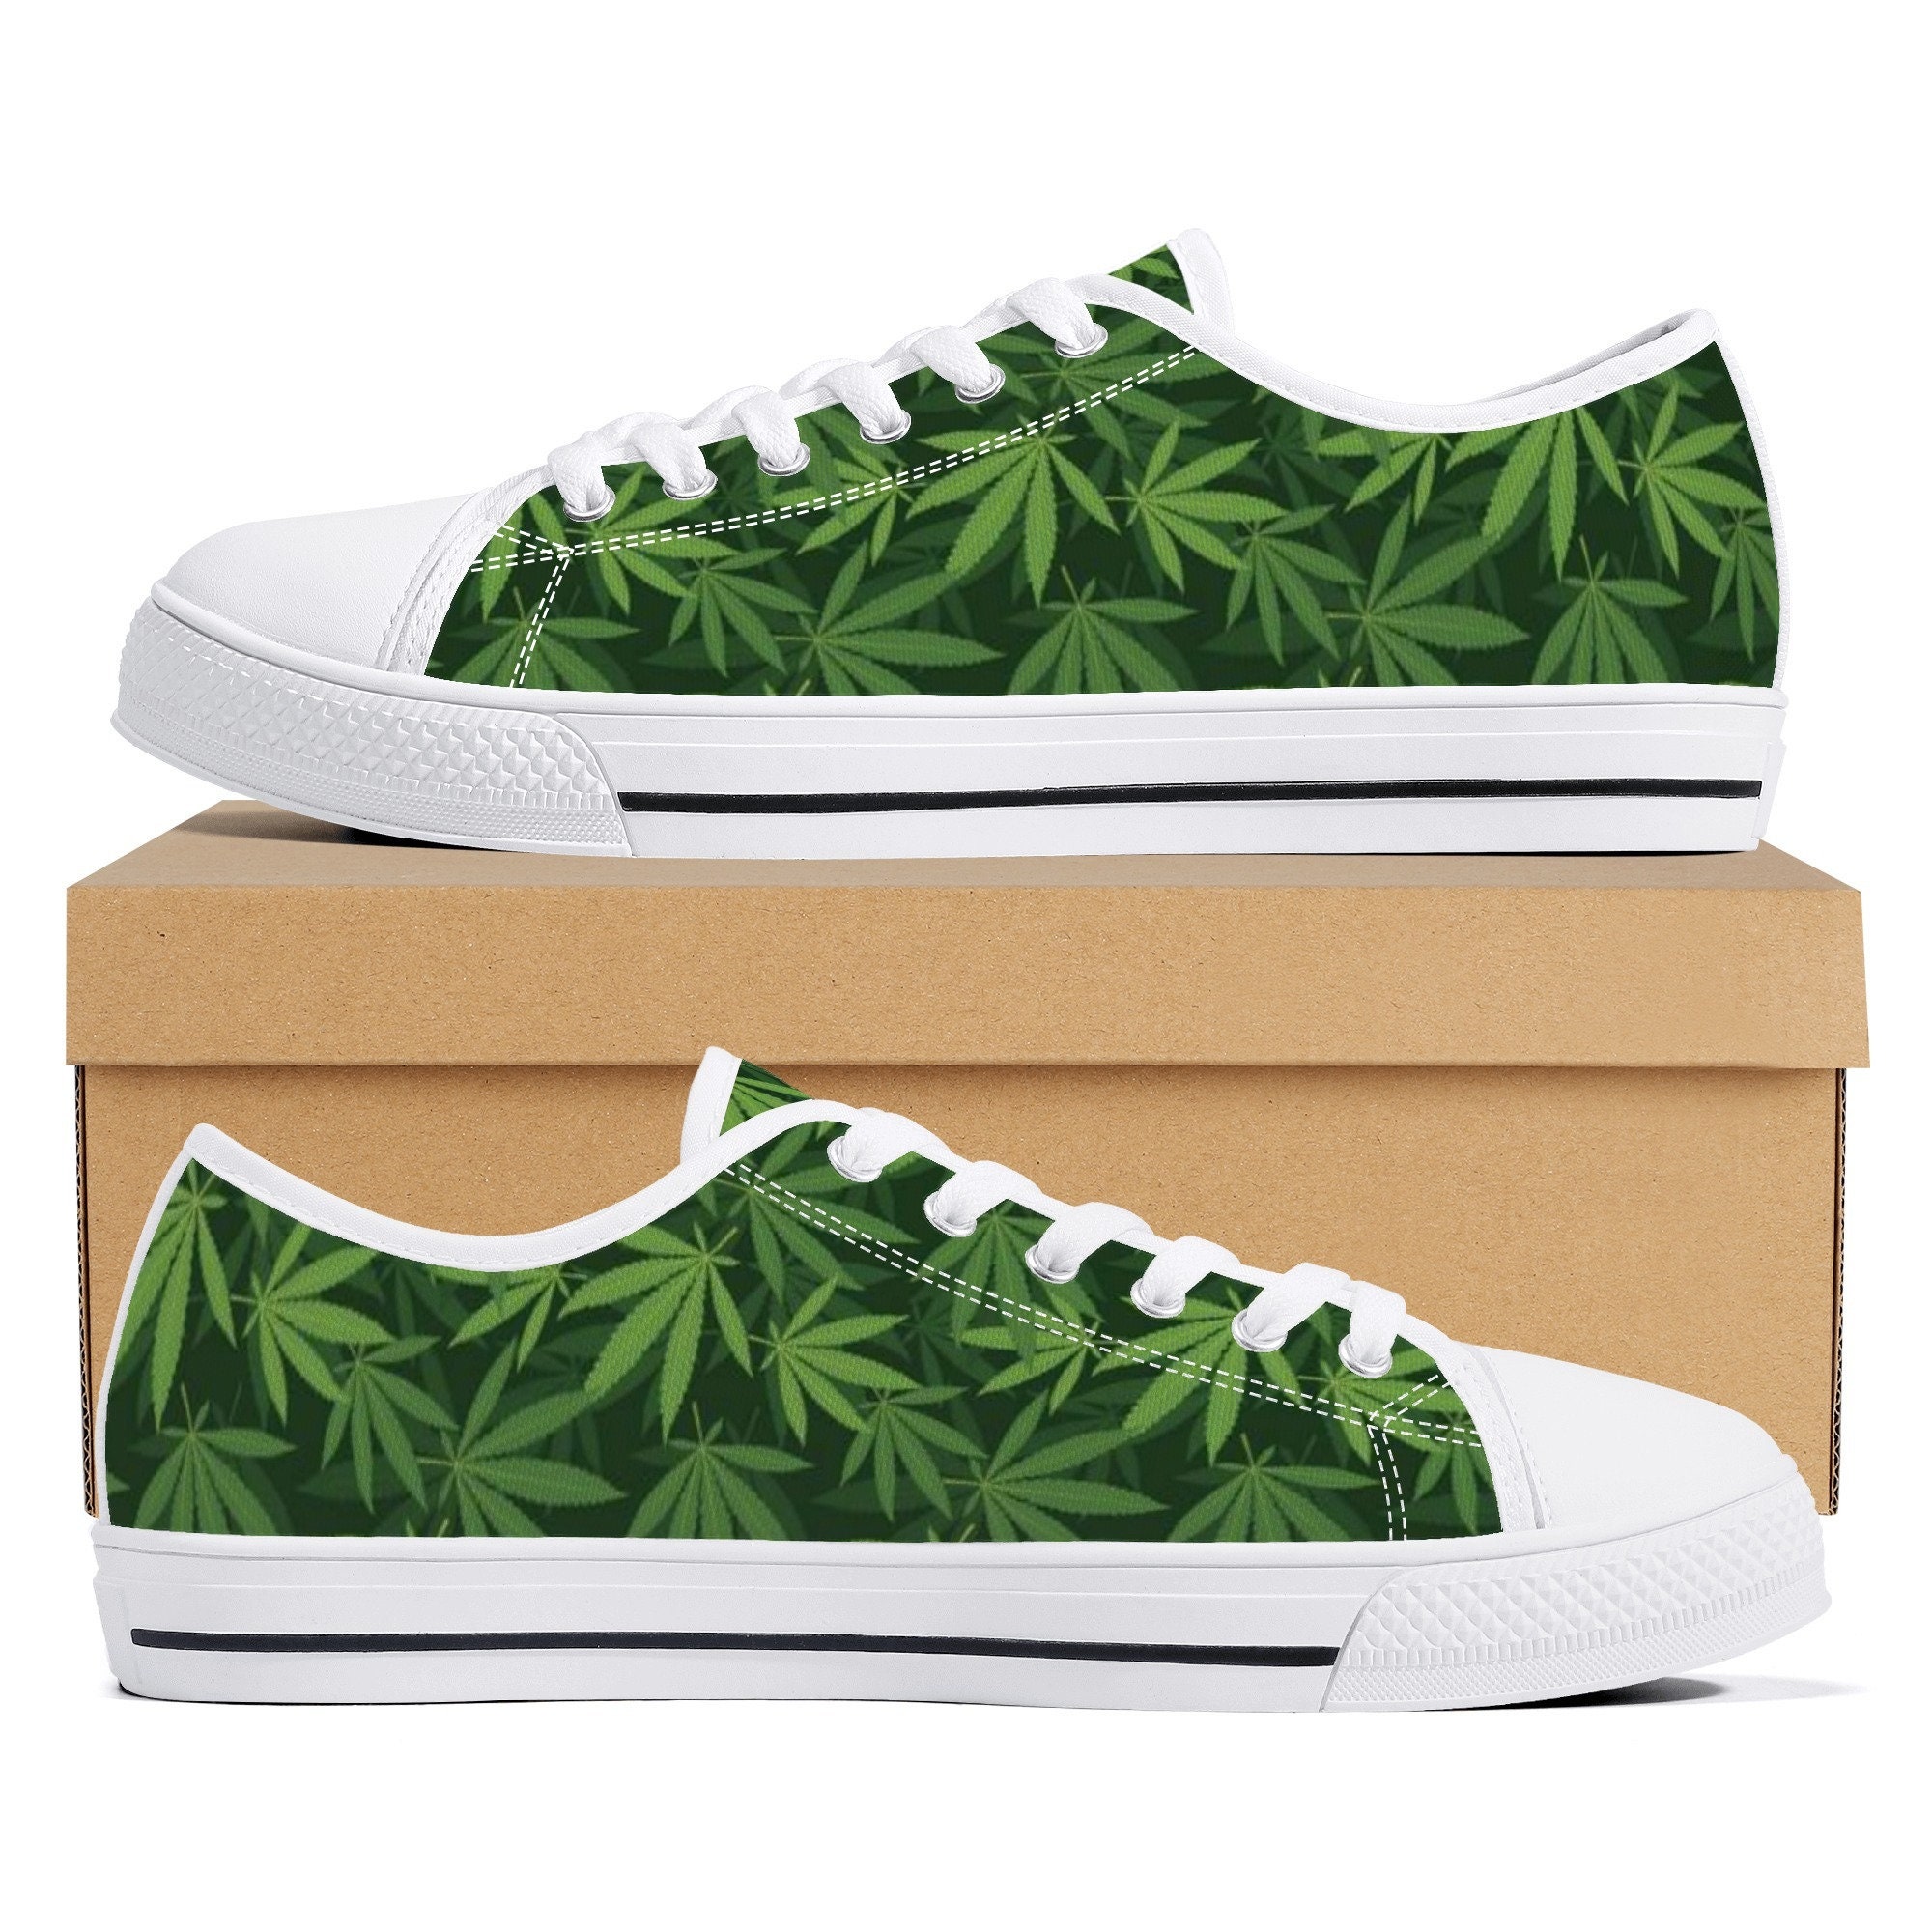 Chaussures de cannabis baskets de mauvaises herbes - Etsy France